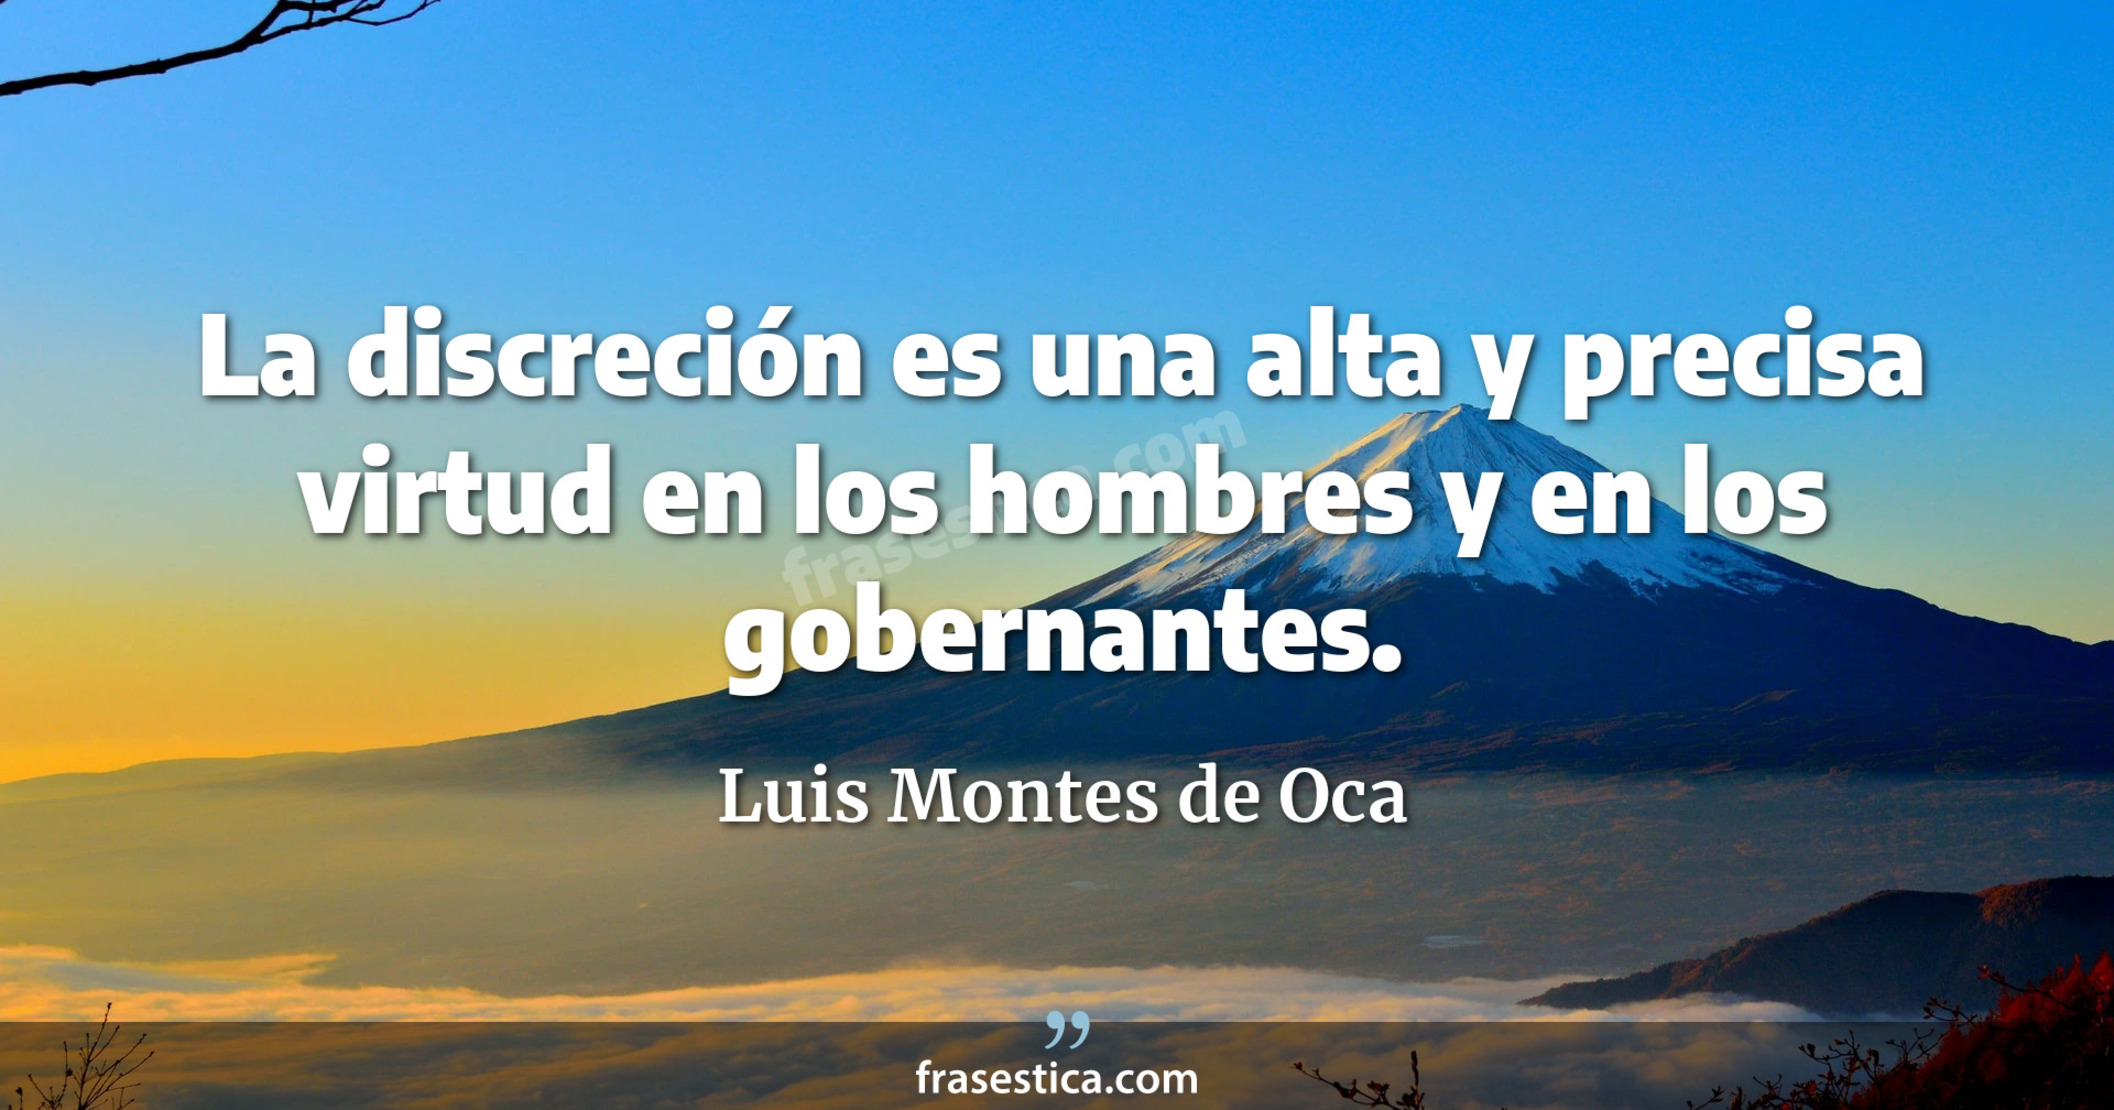 La discreción es una alta y precisa virtud en los hombres y en los gobernantes. - Luis Montes de Oca